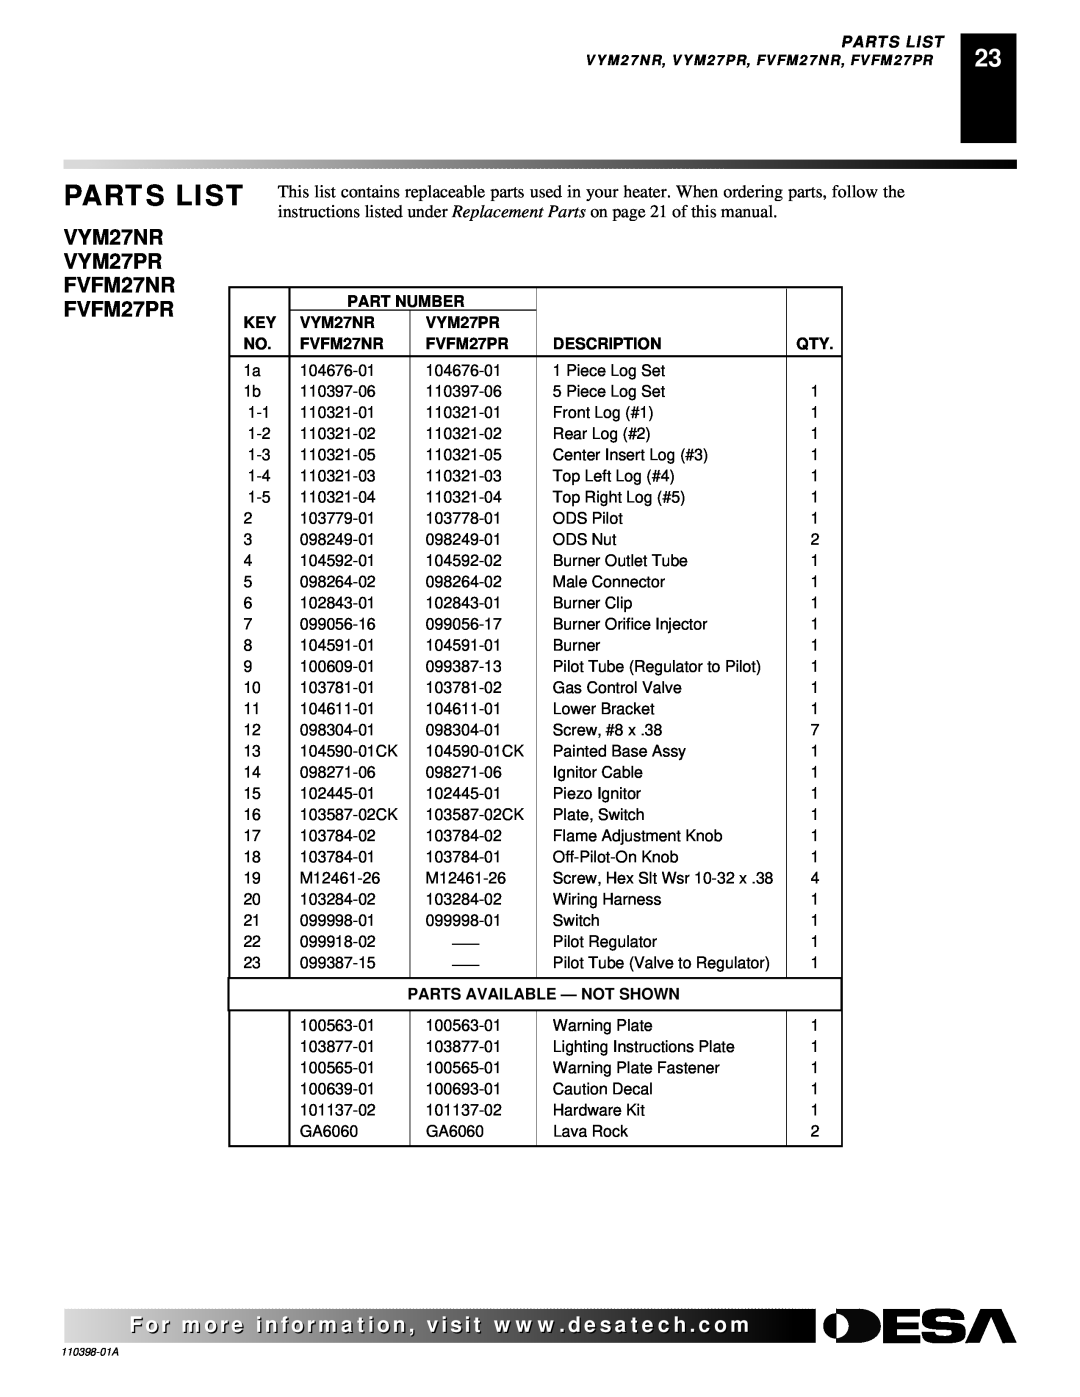 Desa VYM27NRPR Parts List, Part Number, VYM27PR, FVFM27NR, FVFM27PR, Description, Parts Available - Not Shown 